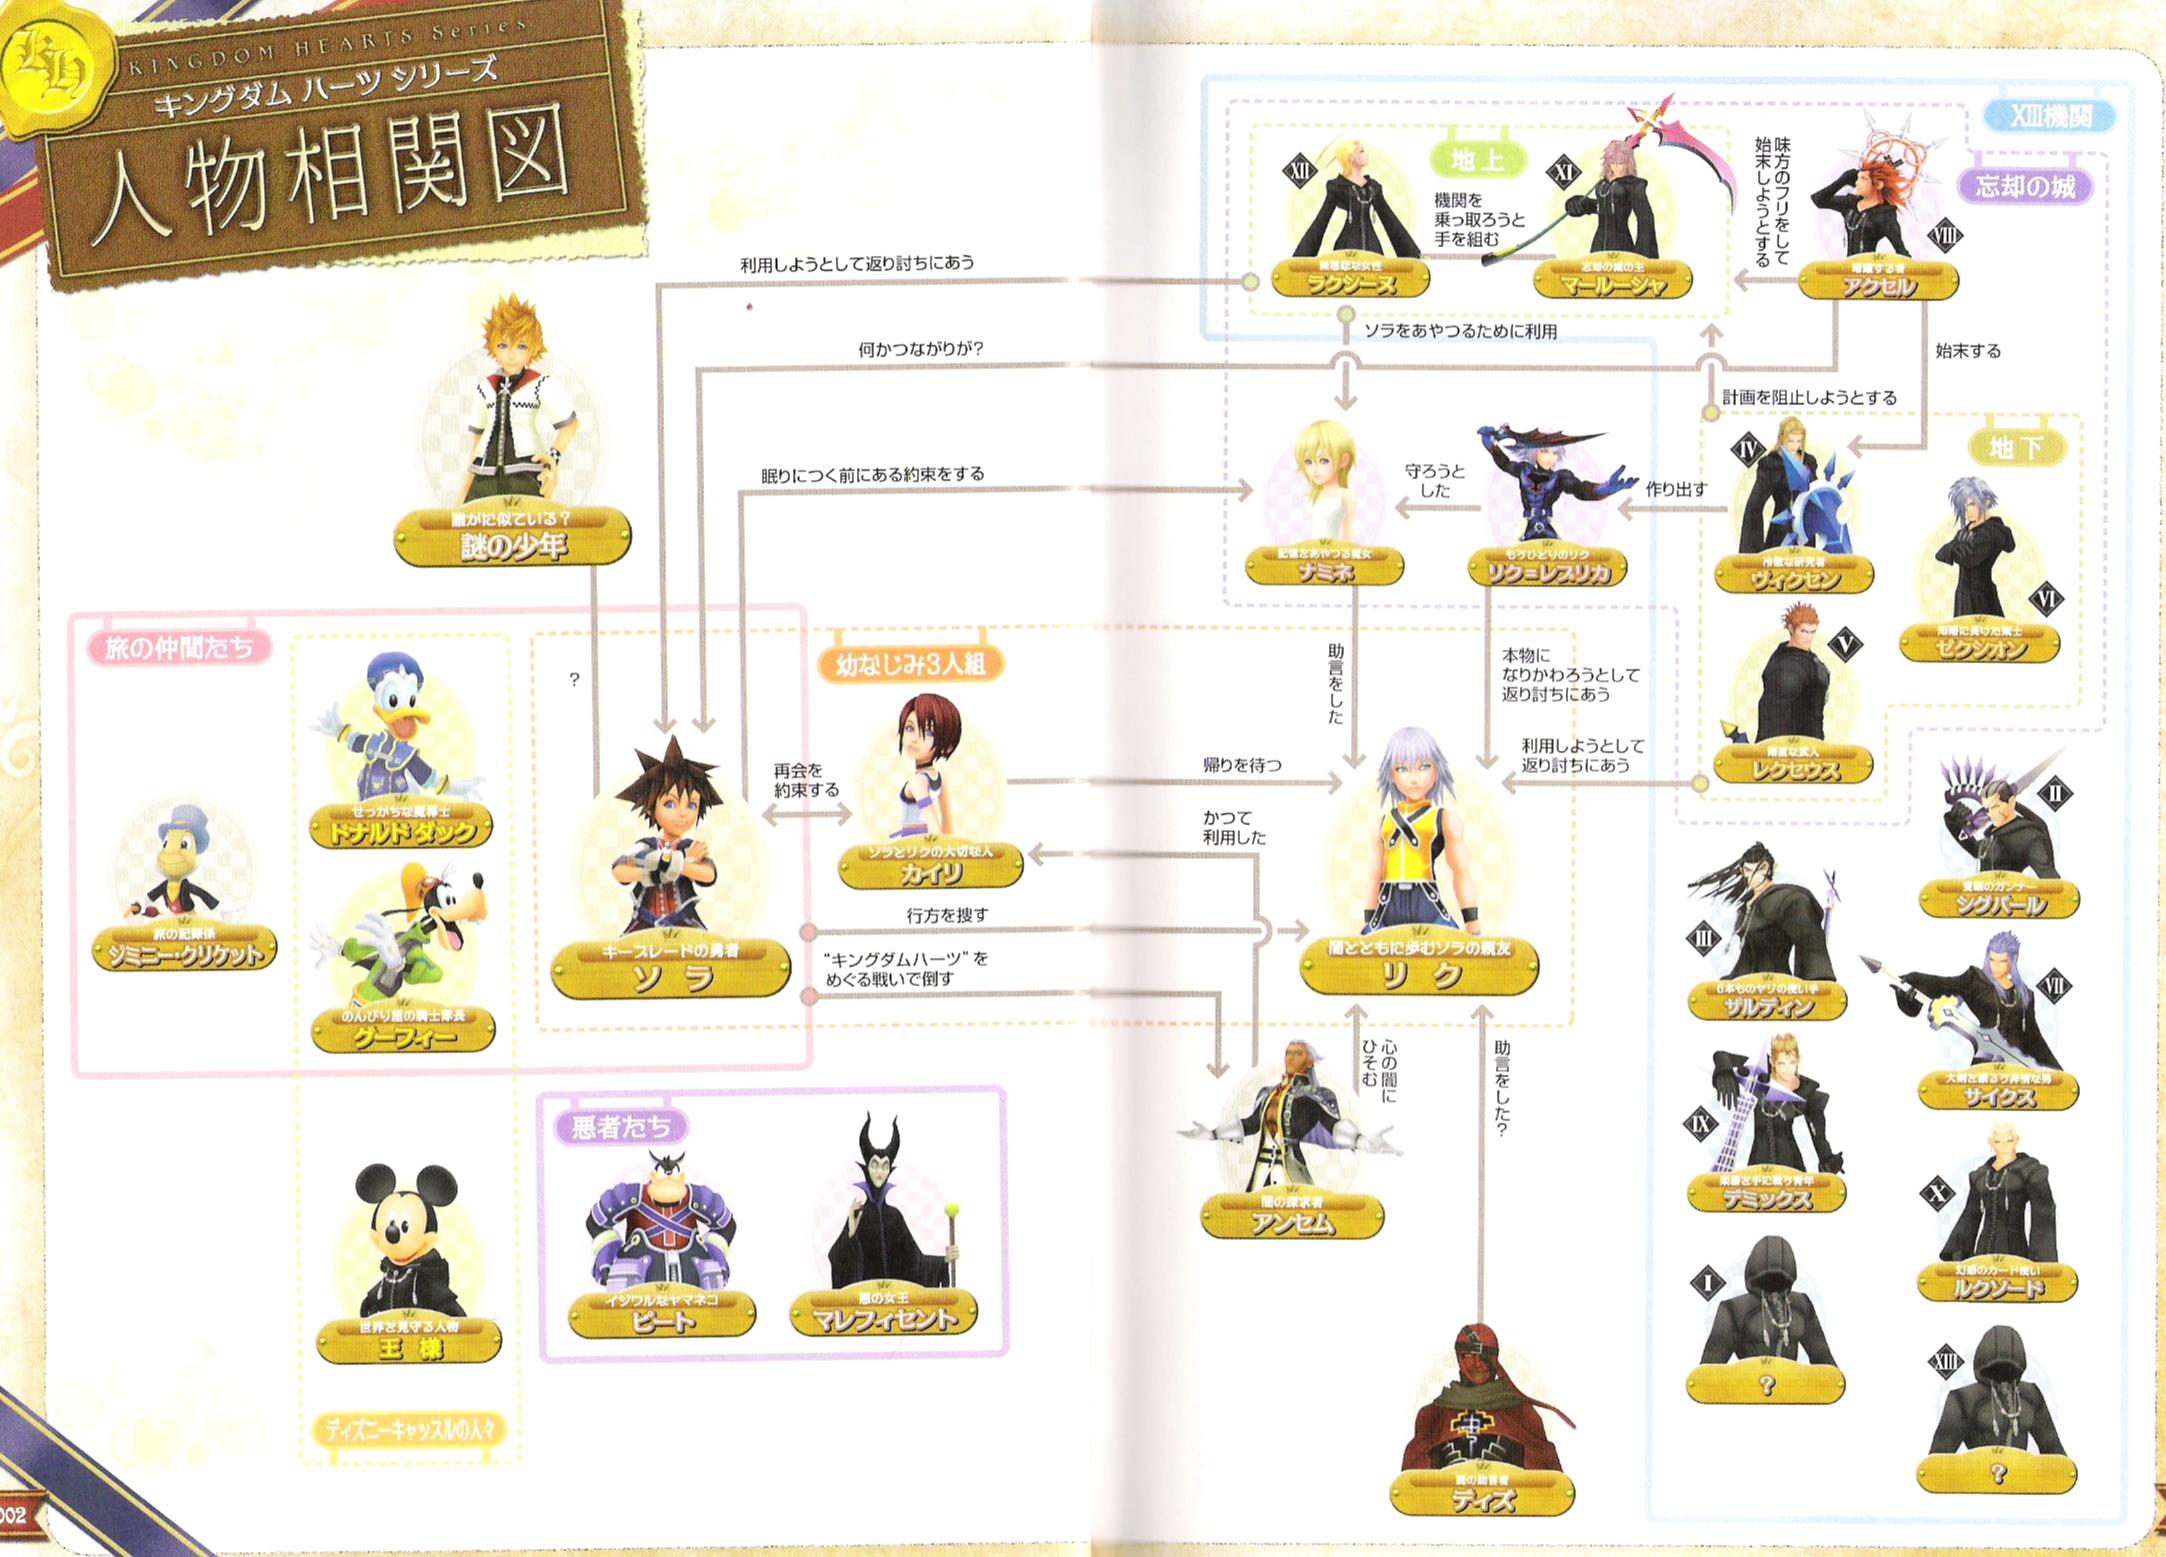 L'avanche Kingdom Hearts 2 !